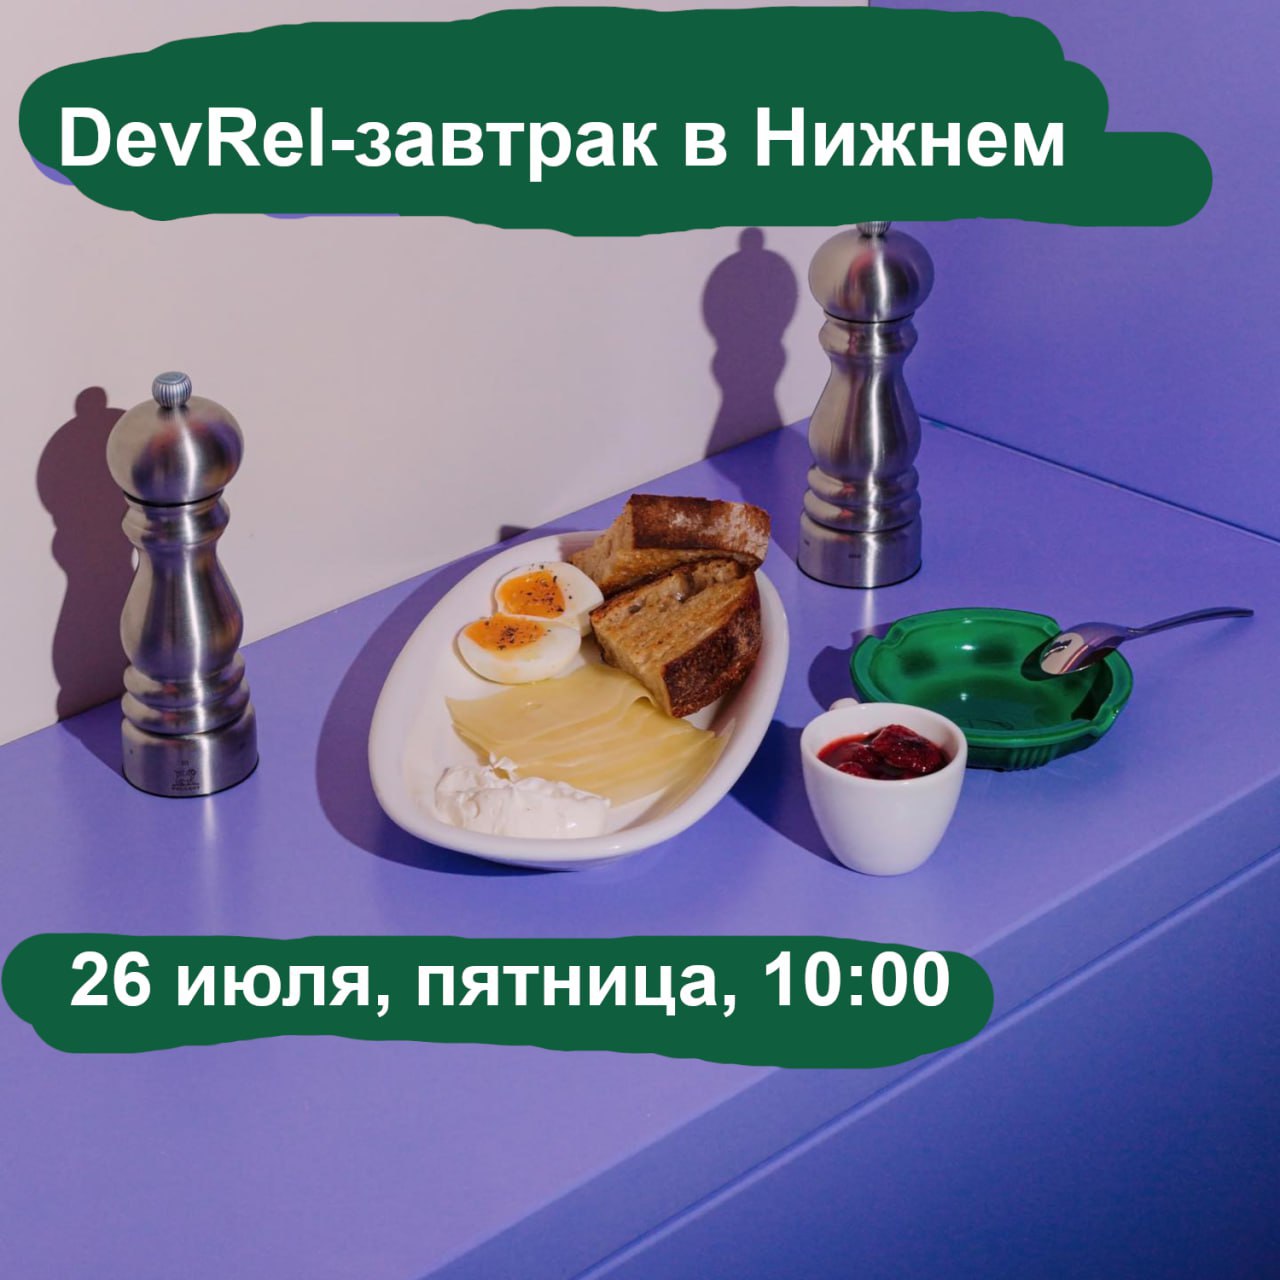 Обложка мероприятия DevRel-завтрак в Нижнем Новгороде